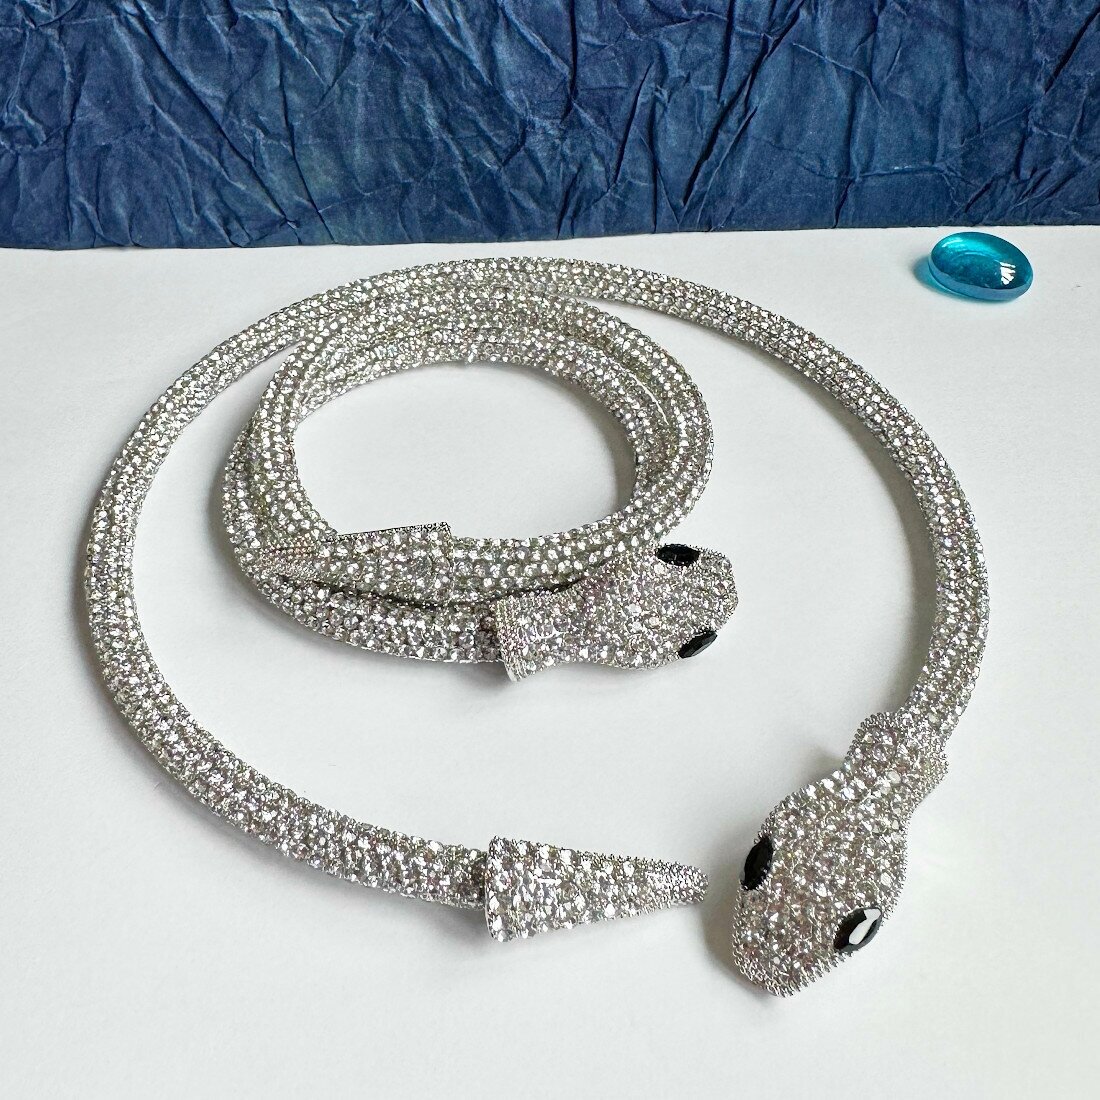 Комплект бижутерии Комплект украшений со змеями (колье-чокер и браслет): браслет, колье